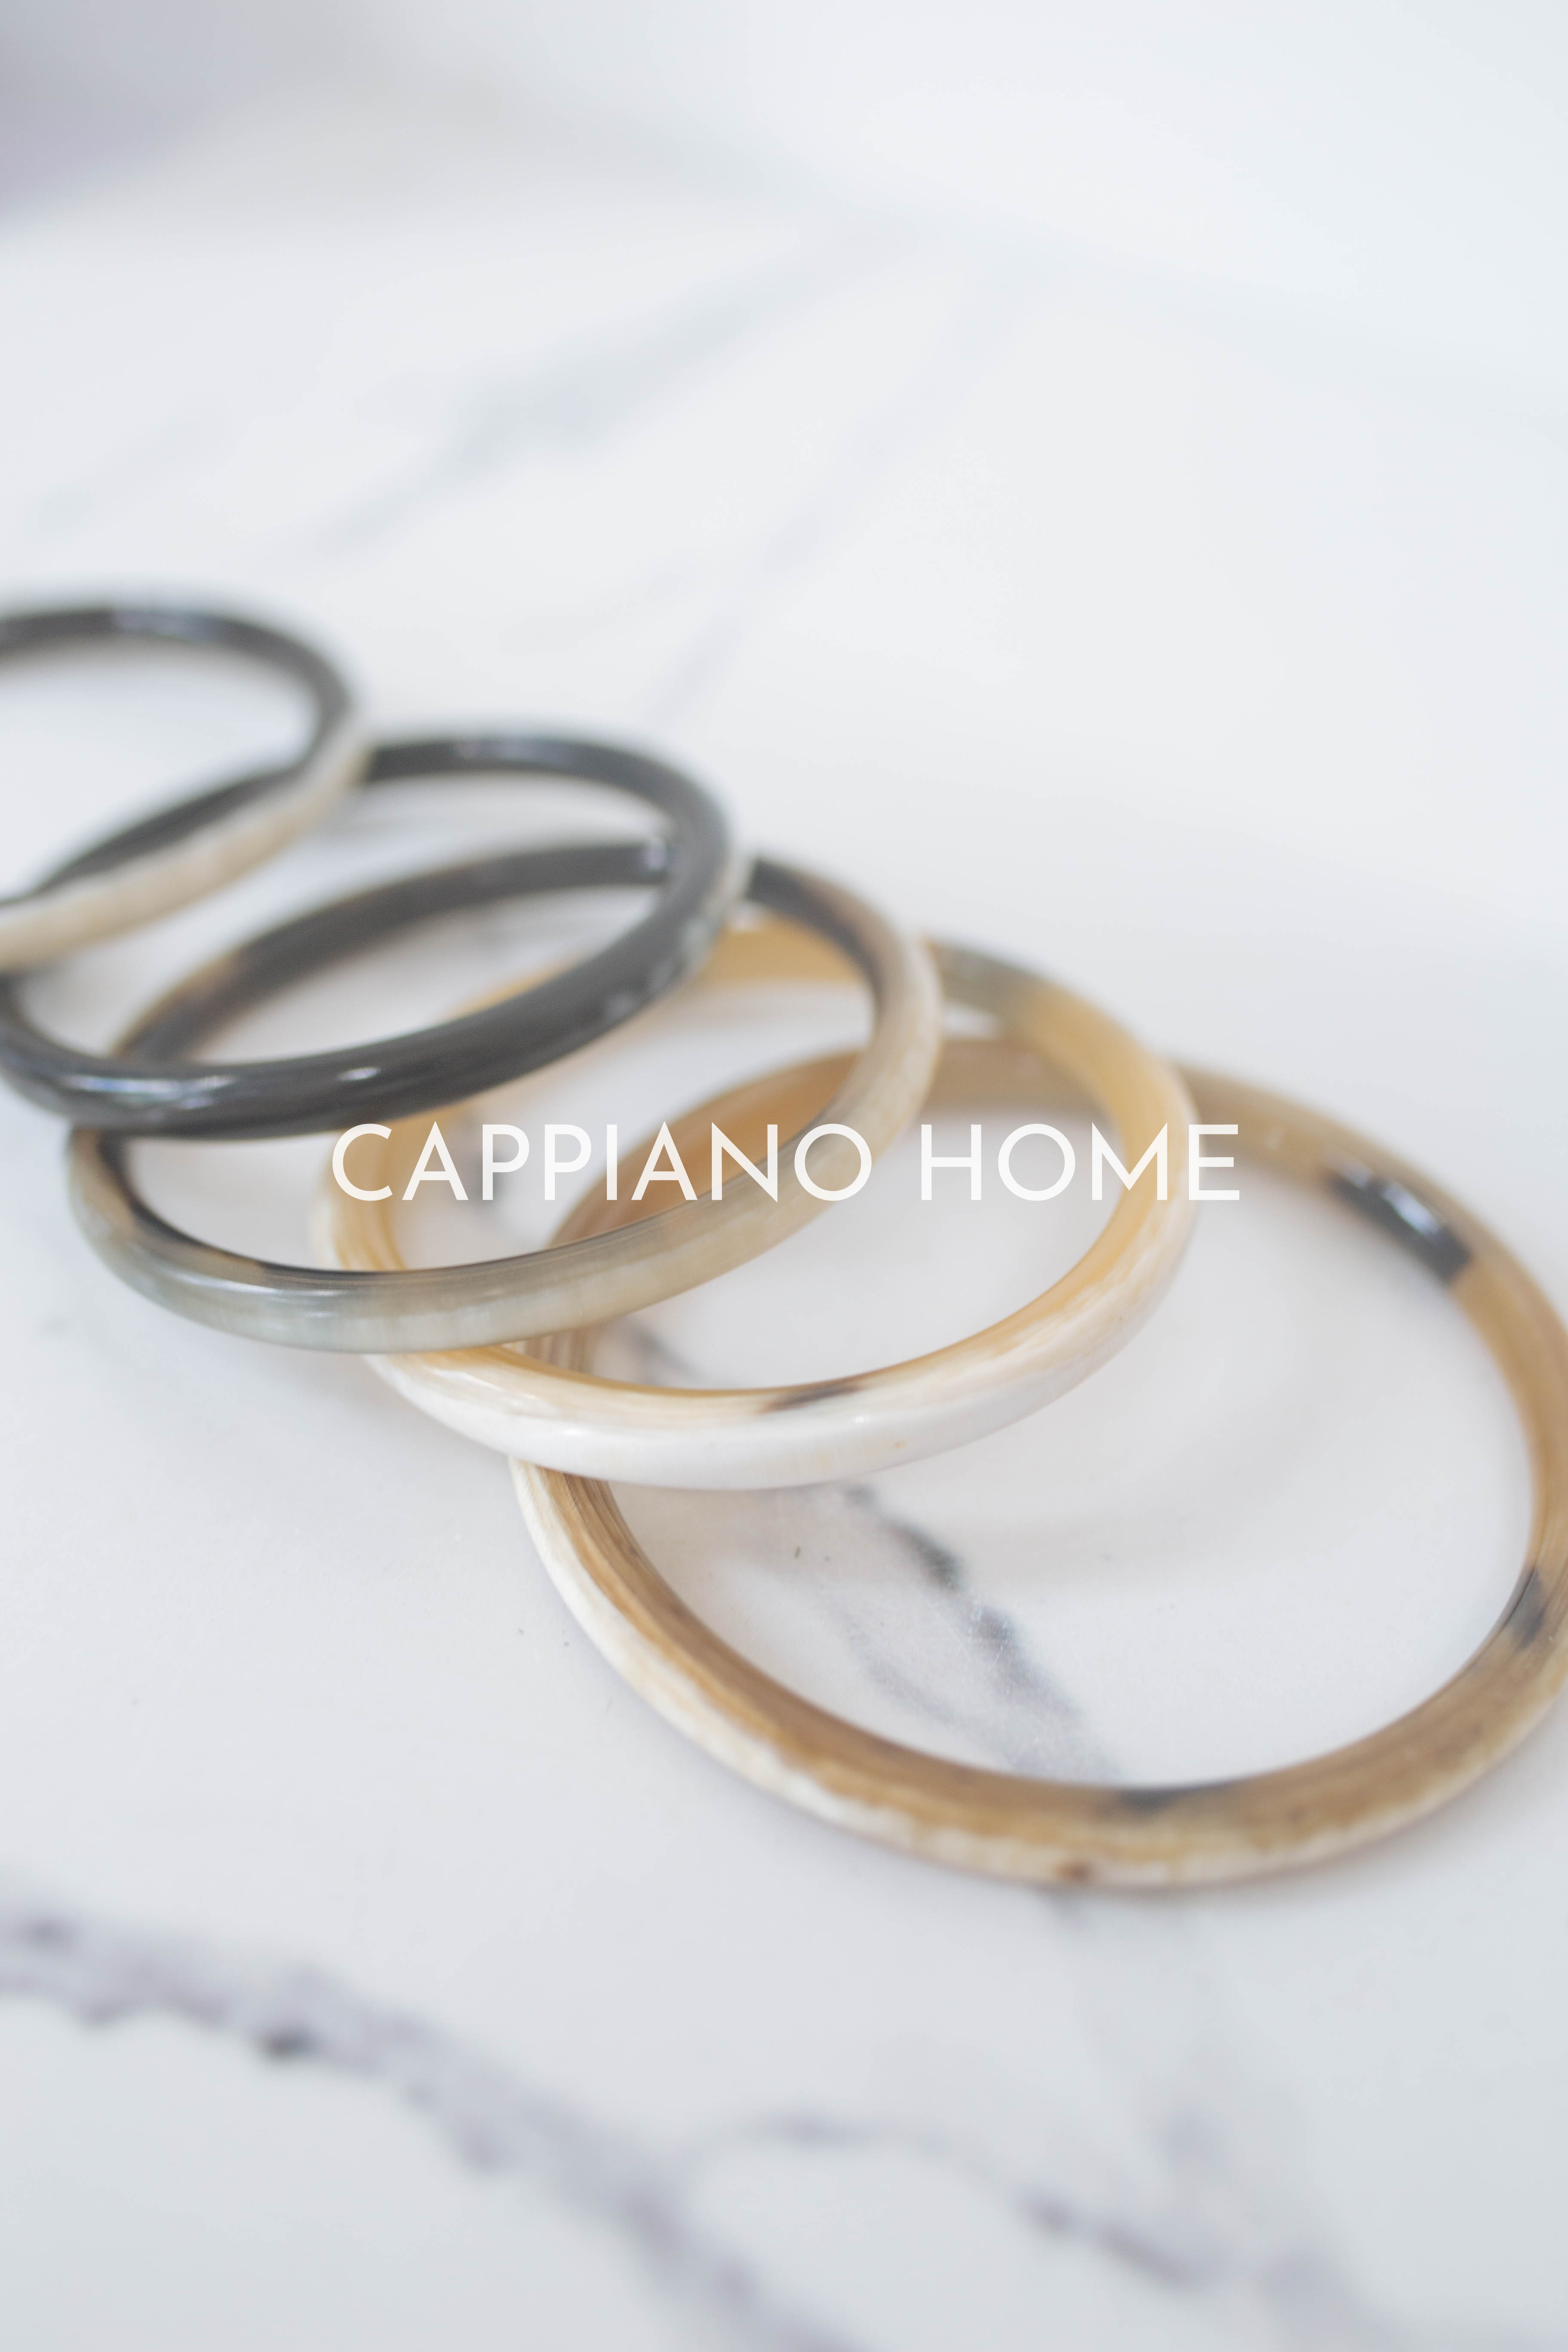 Set vòng tuần làm từ sừng tự nhiên kị gió, set vòng tay cao cấp, set vòng tuần | Cappiano home